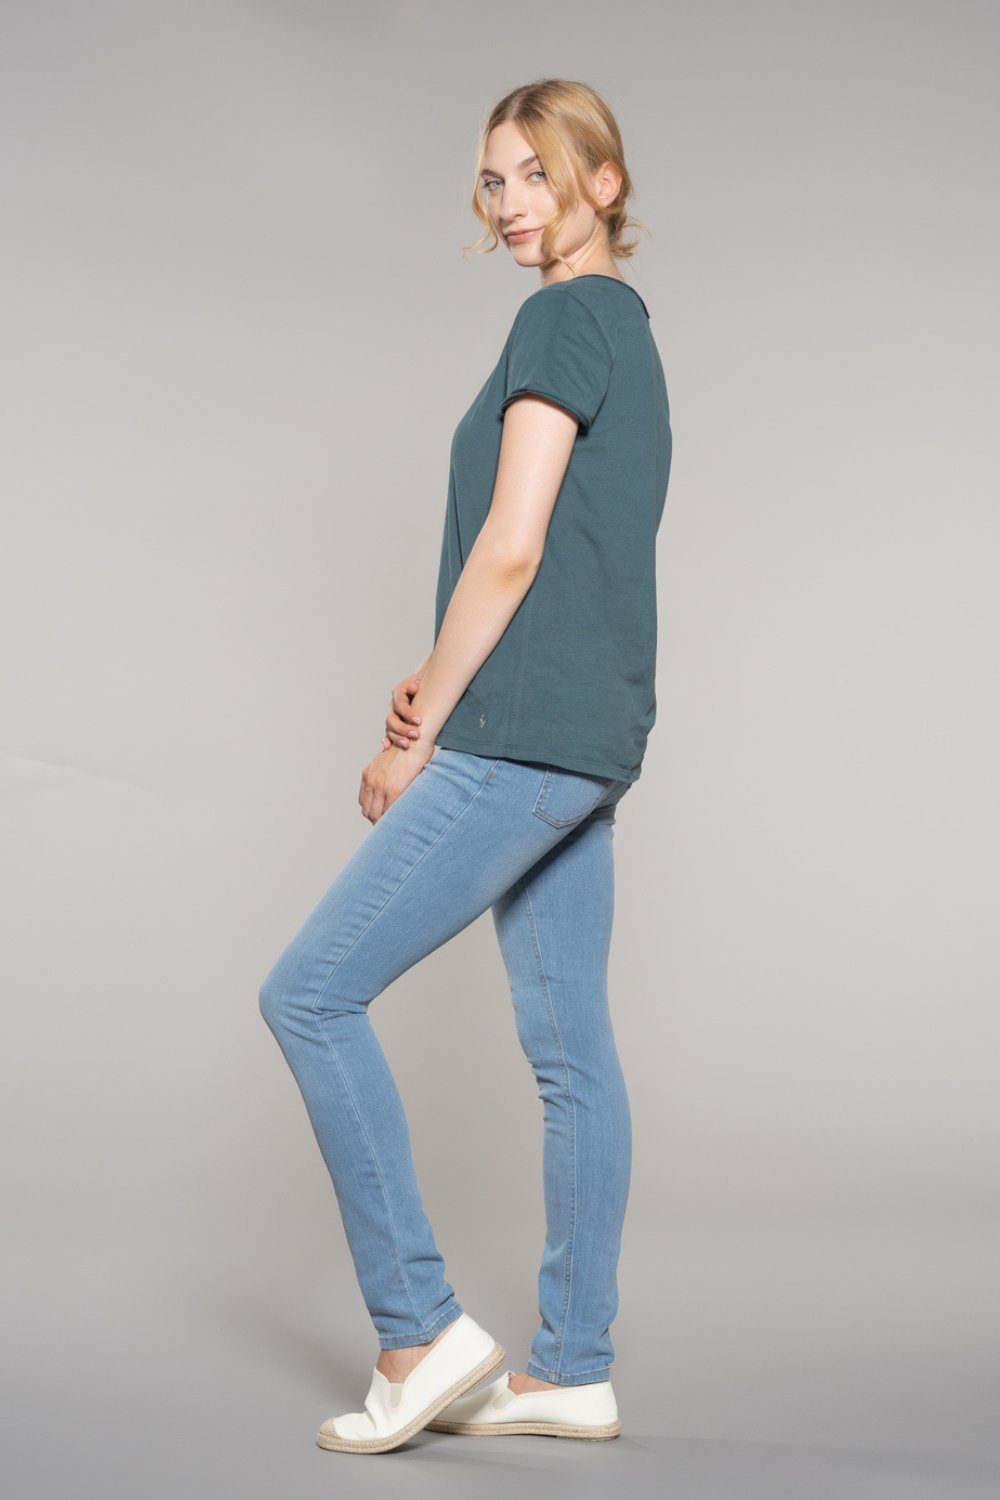 Feuervogl High-waist-Jeans Waist 5-Pocket-Style, Hyperflex Denim, High Summer Blue Skinny, Waist, Damenjeans High fv-Han:na